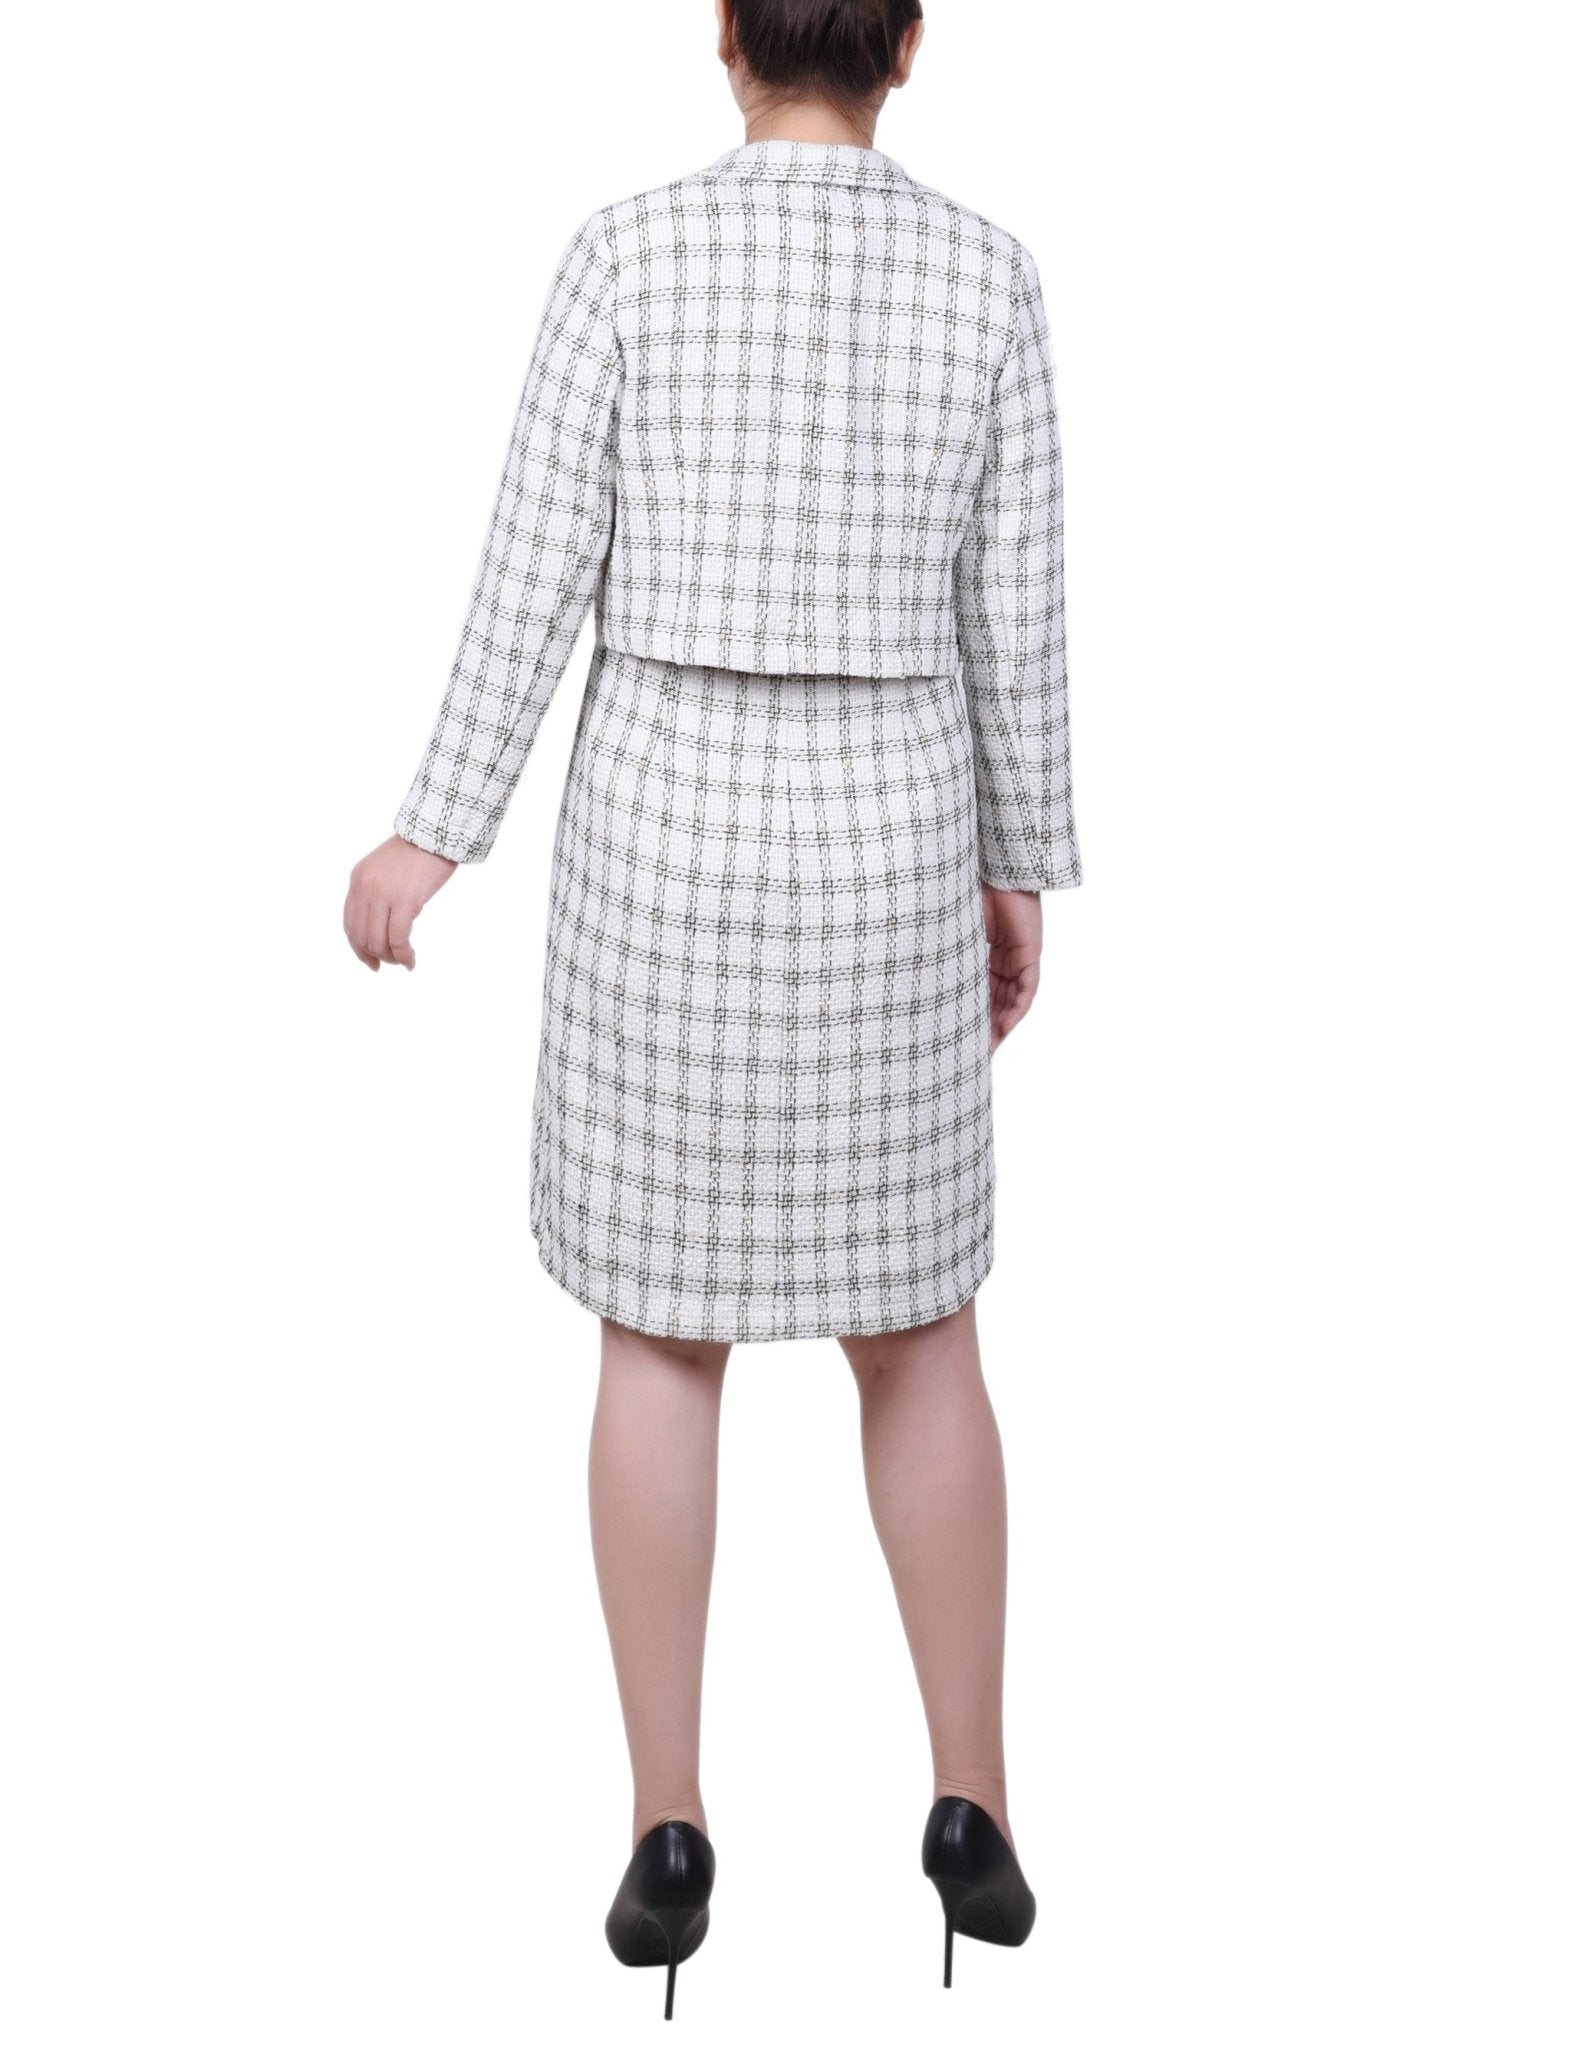 Long Sleeve Tweed Dress Set - Petite - DressbarnDresses